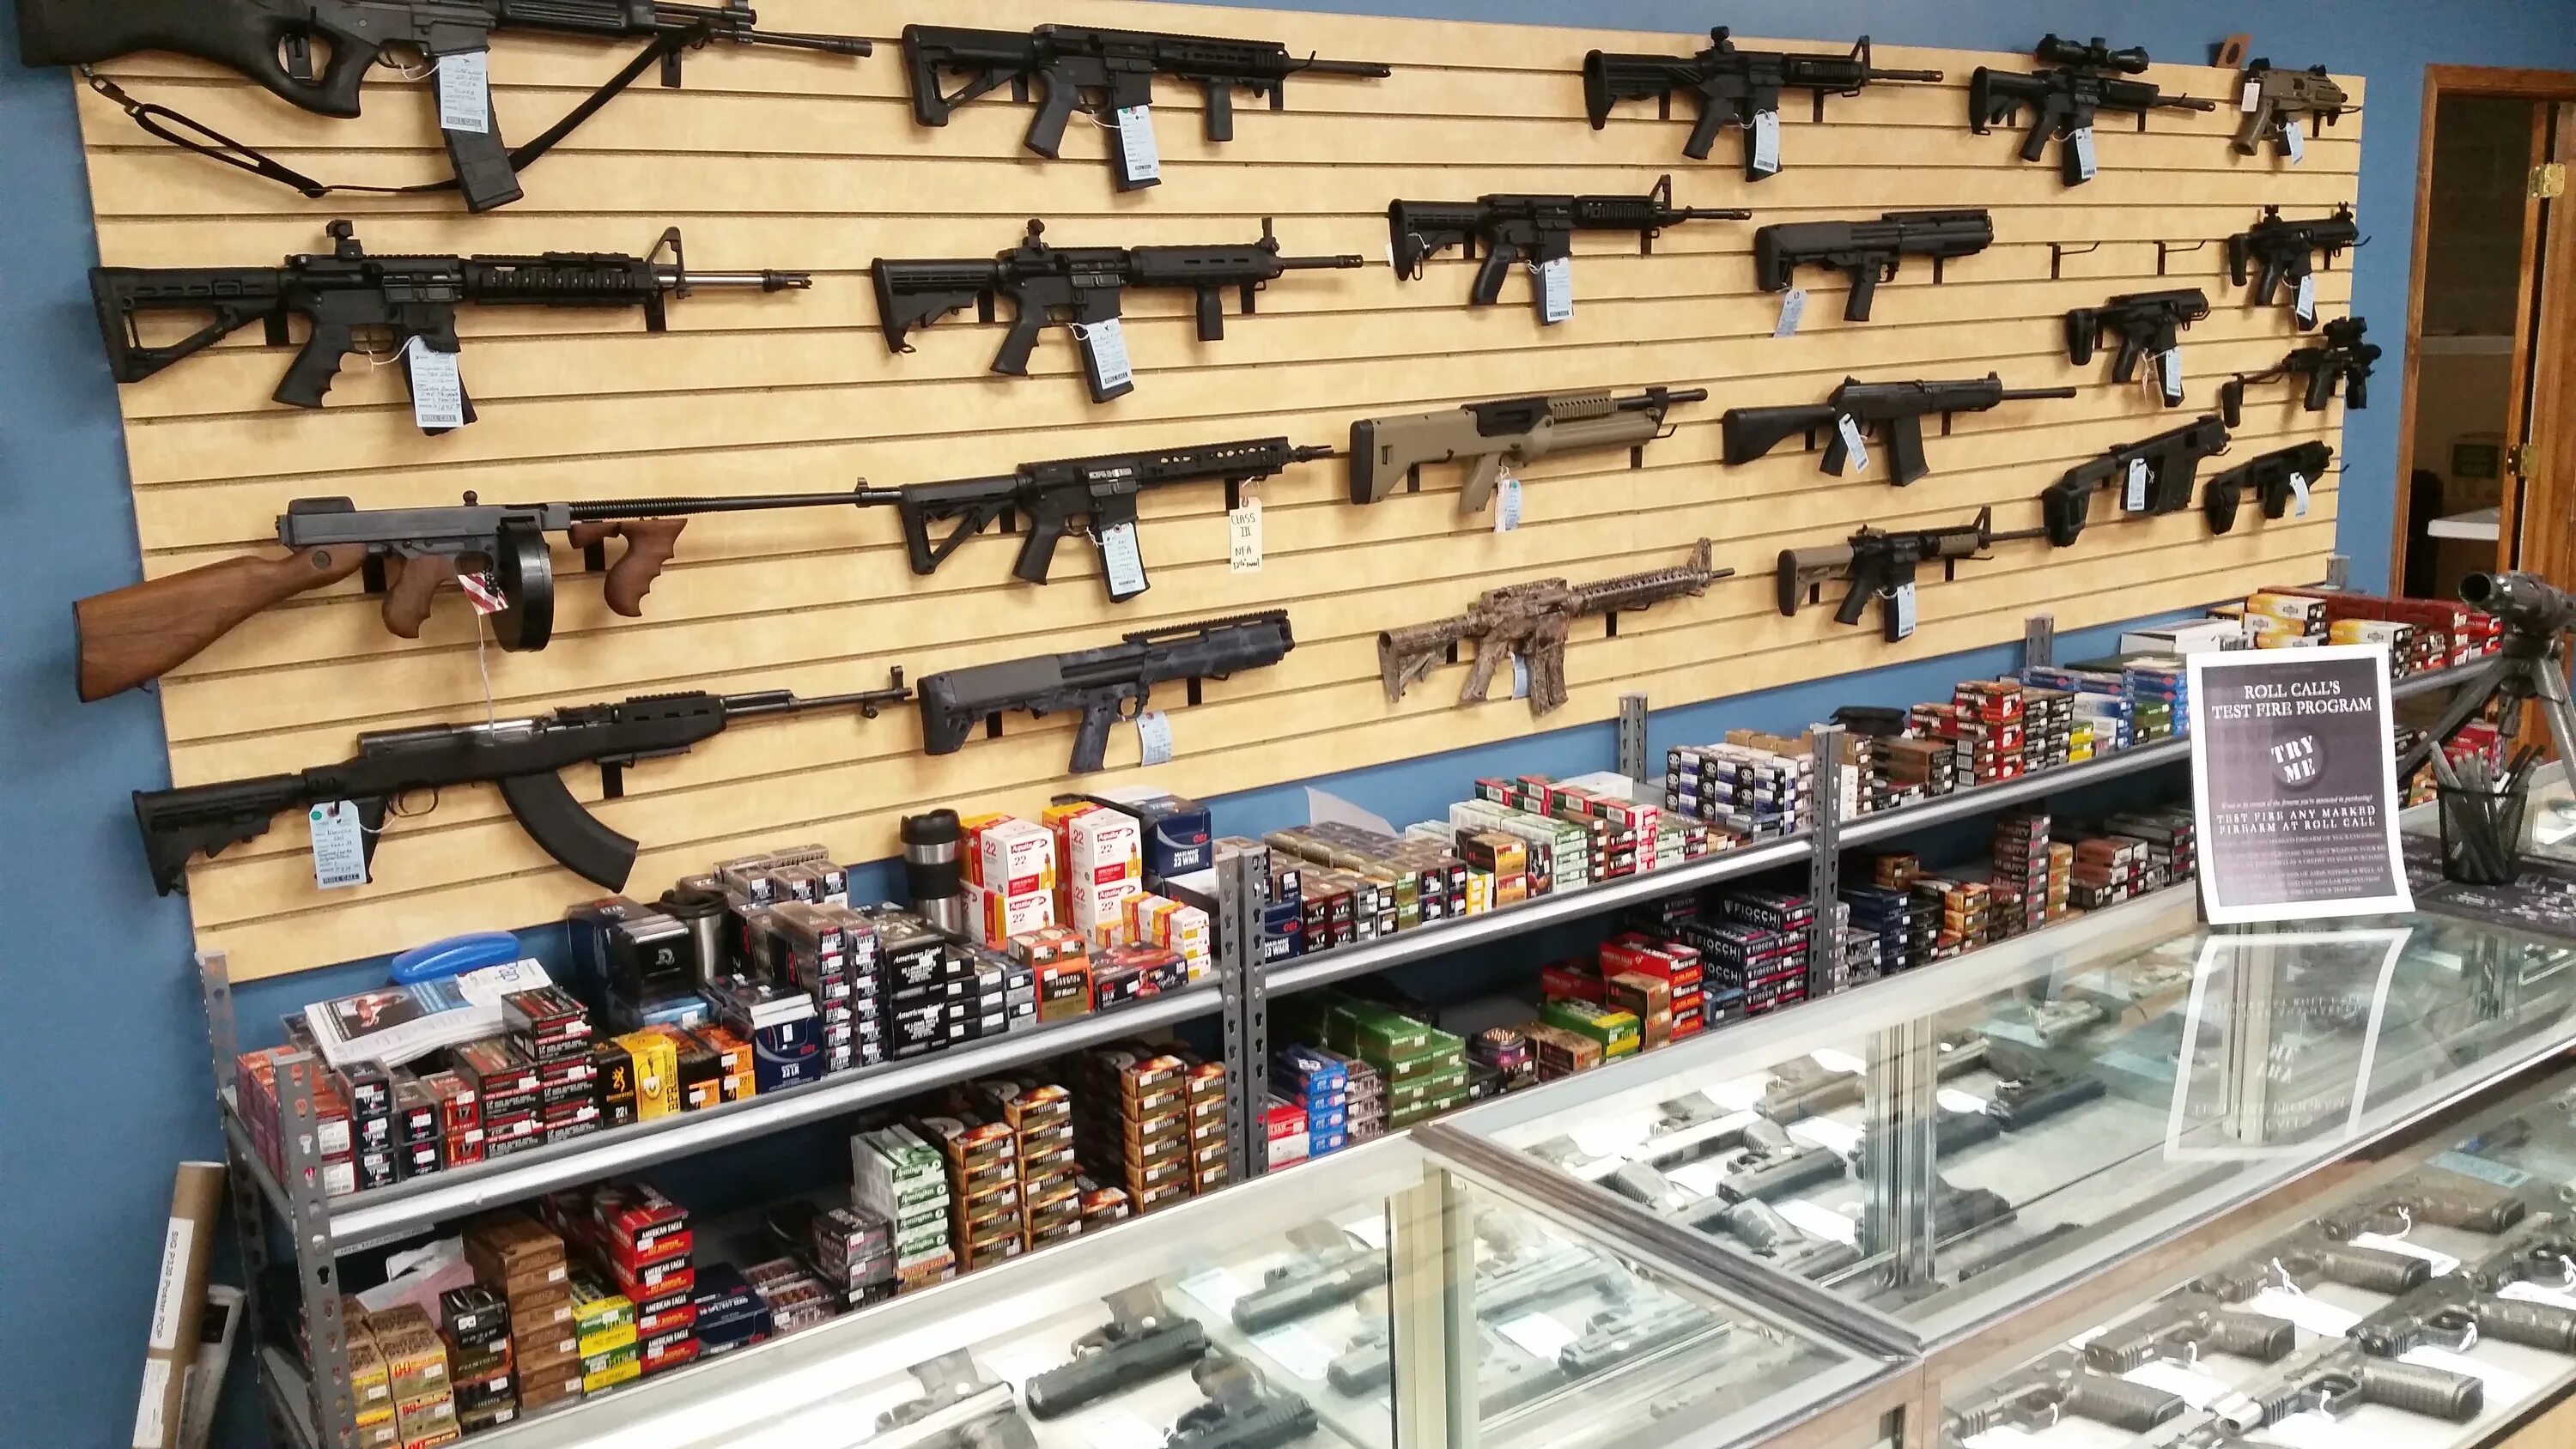 Gun store